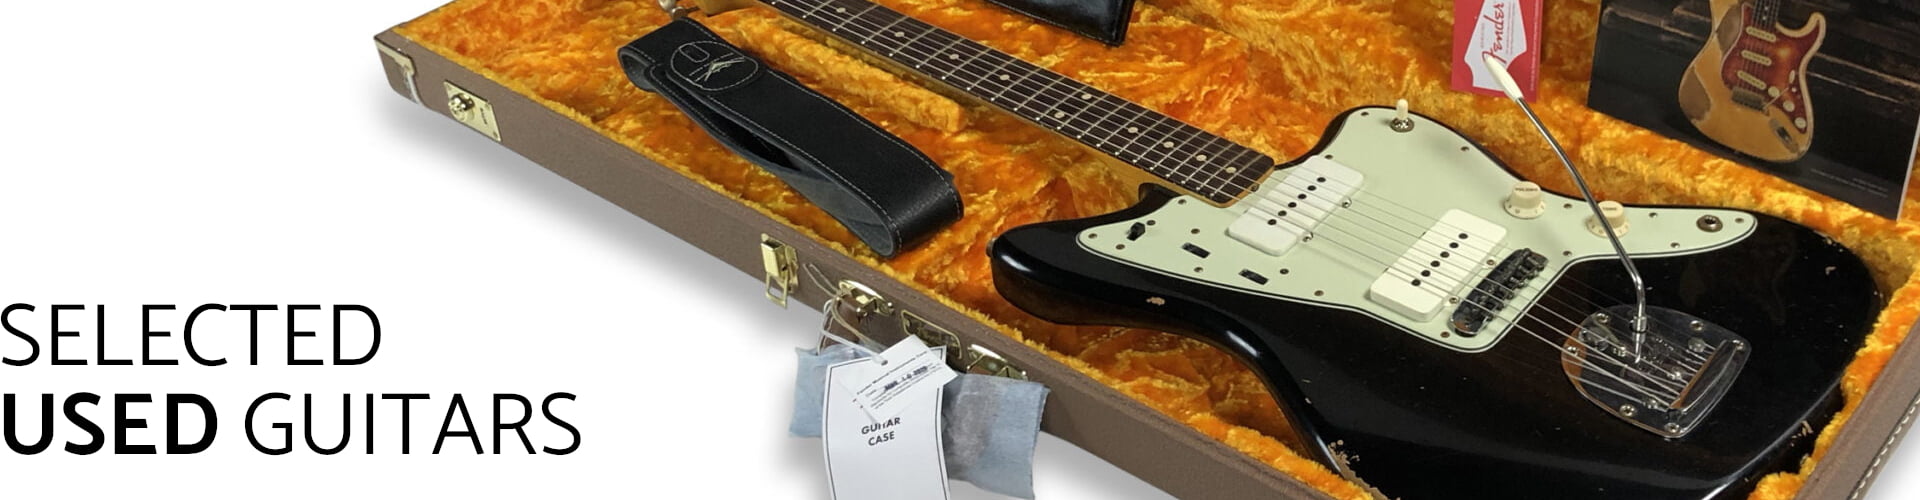 De fineste vintage-guitarer til salg 10 Guitar Hunter